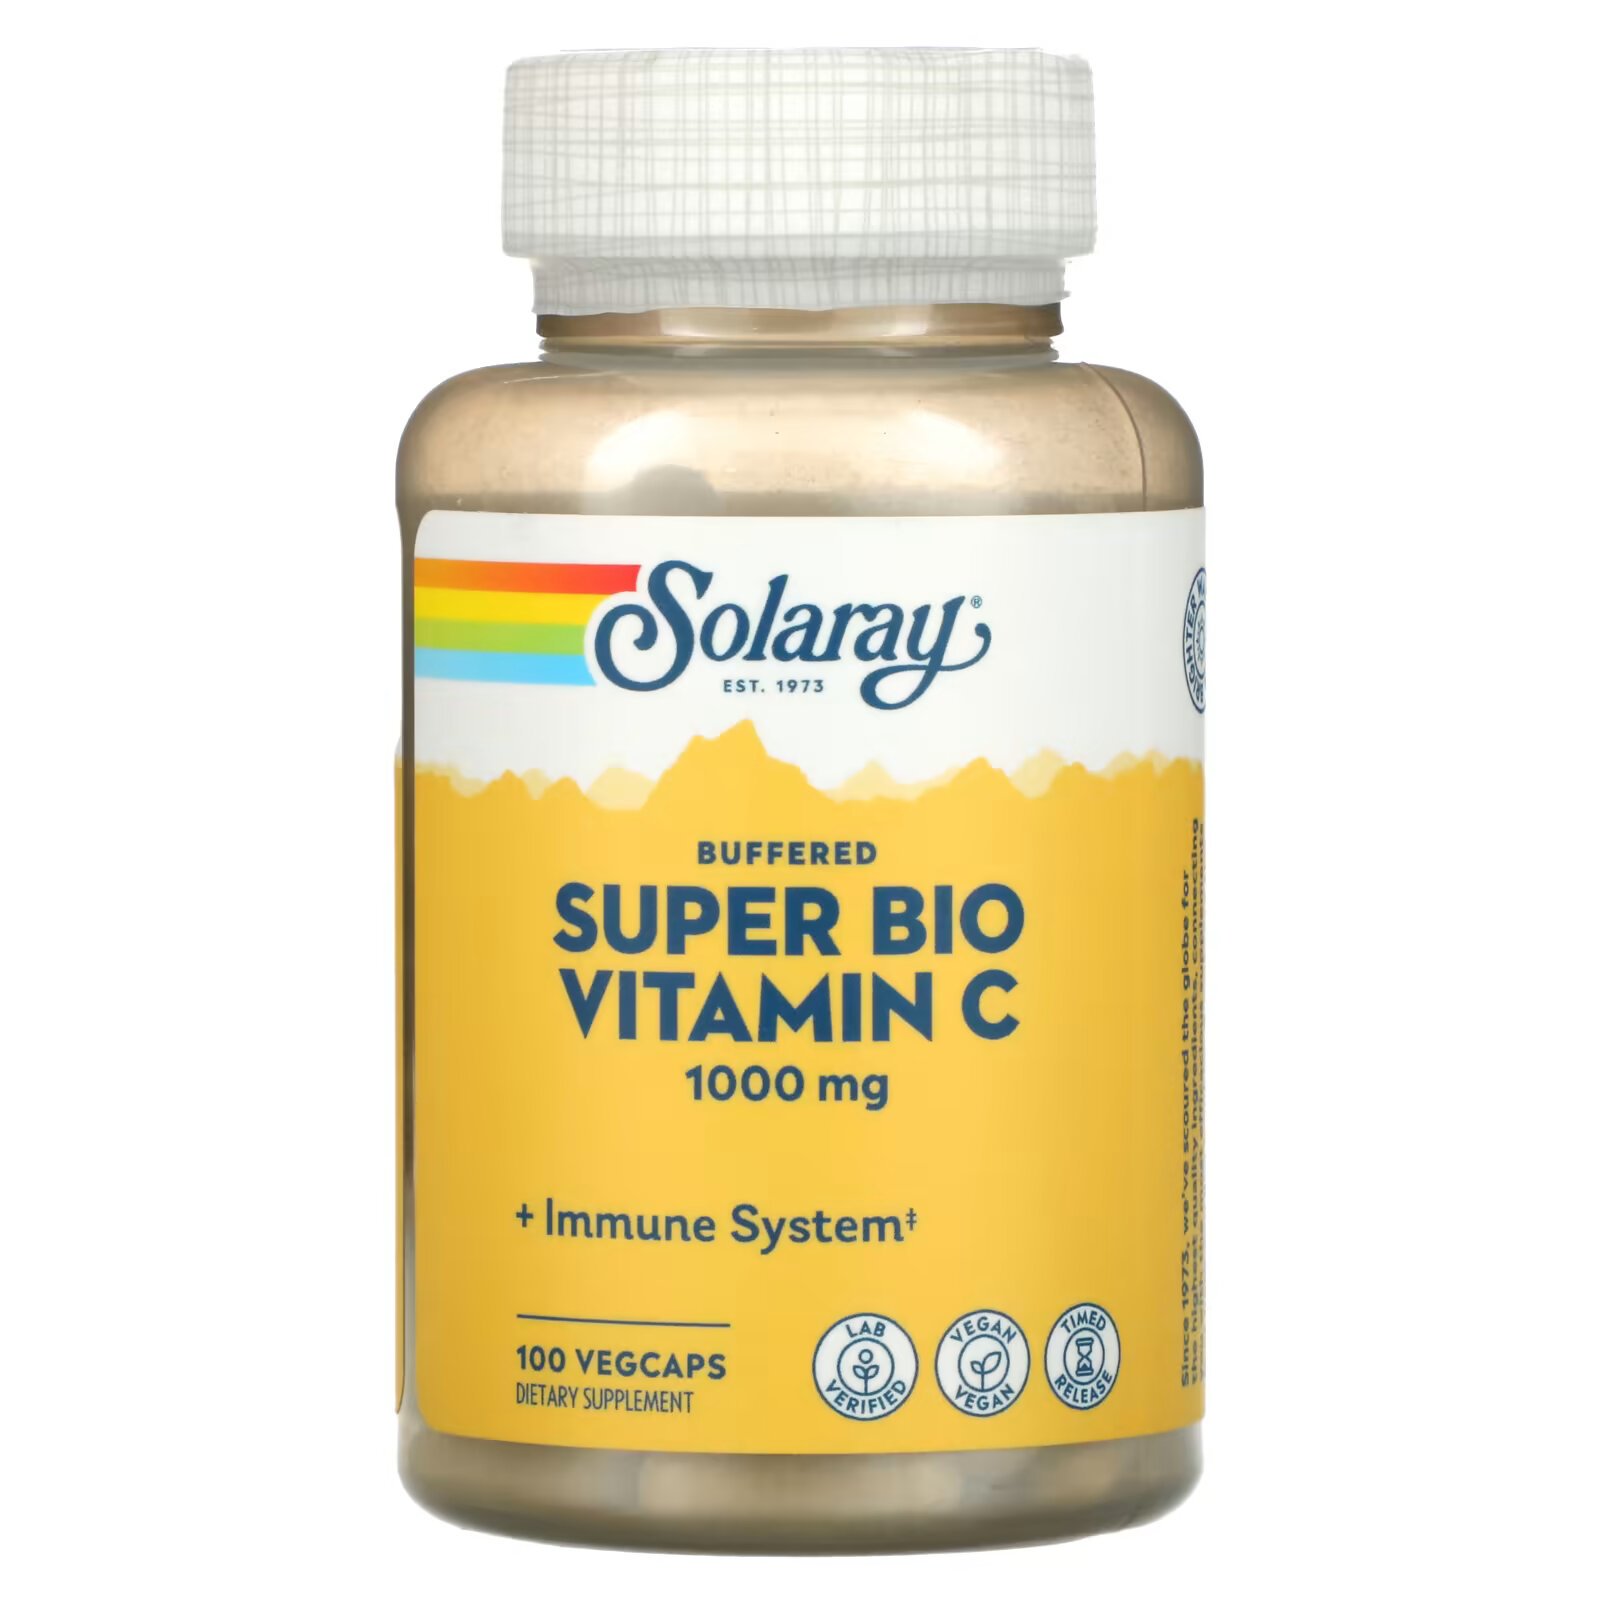 Solaray, Super Bio Vitamin C, витамин C медленного высвобождения, 100 вегетарианских капсул